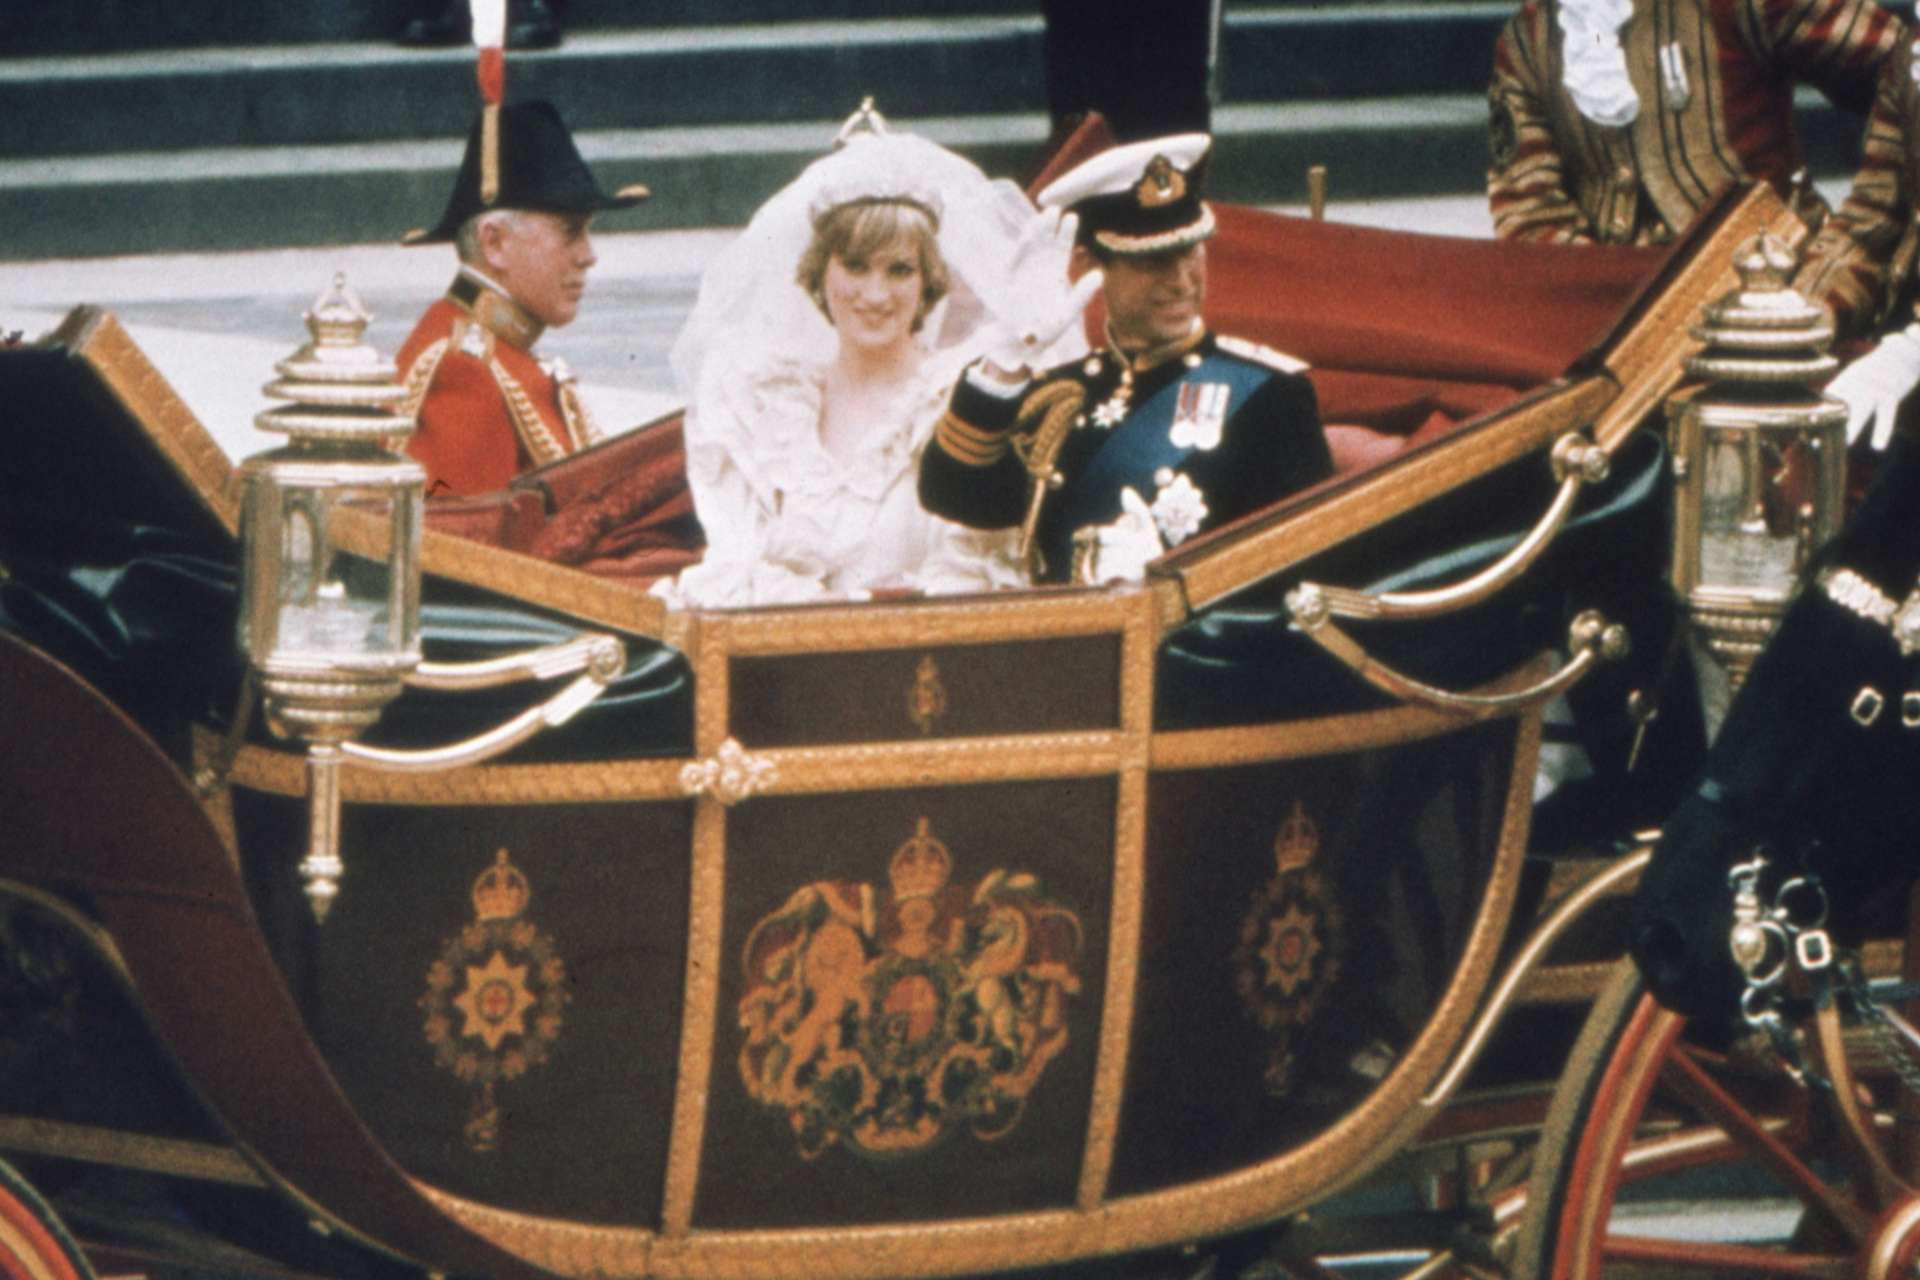 Princess Diana and Prince Charles on their wedding day | royal wedding dresses